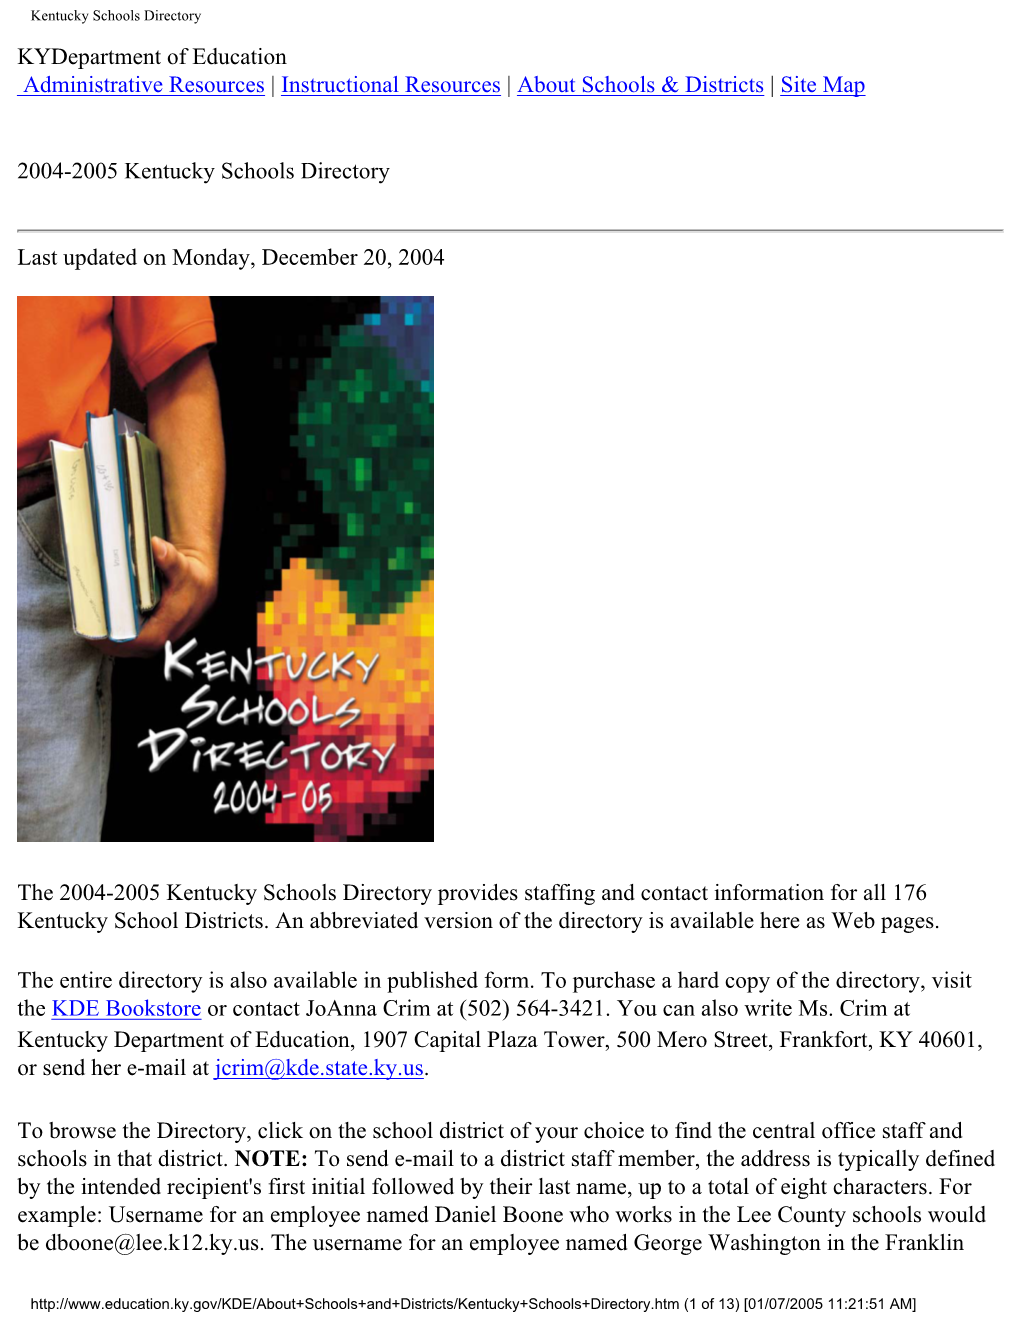 2004-2005 Kentucky Schools Directory